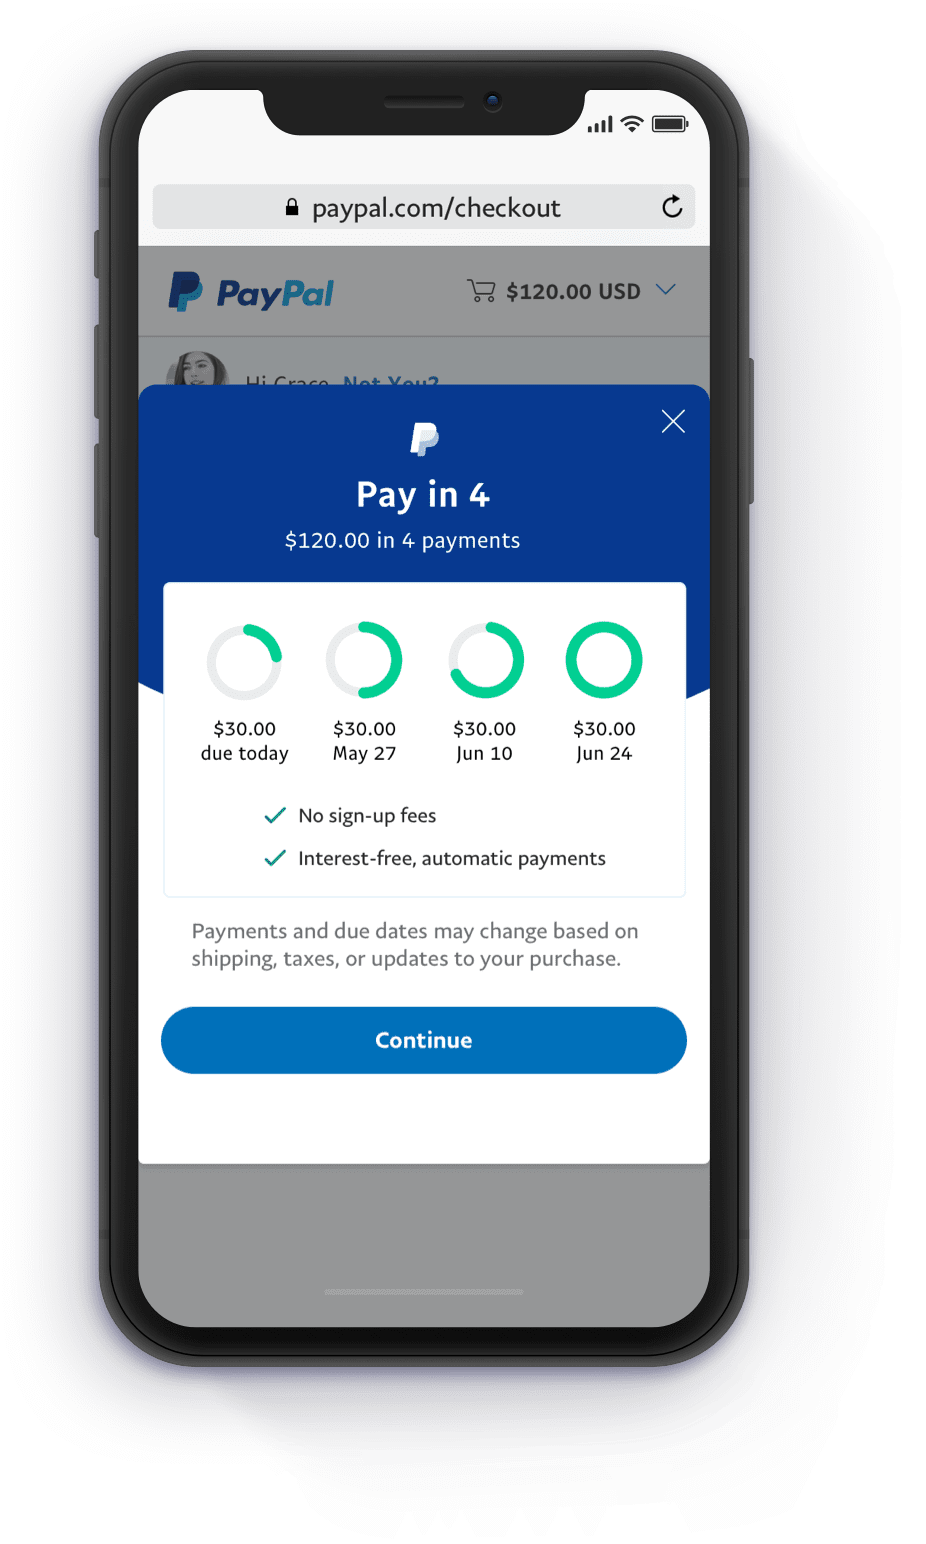 cash app vs paypal